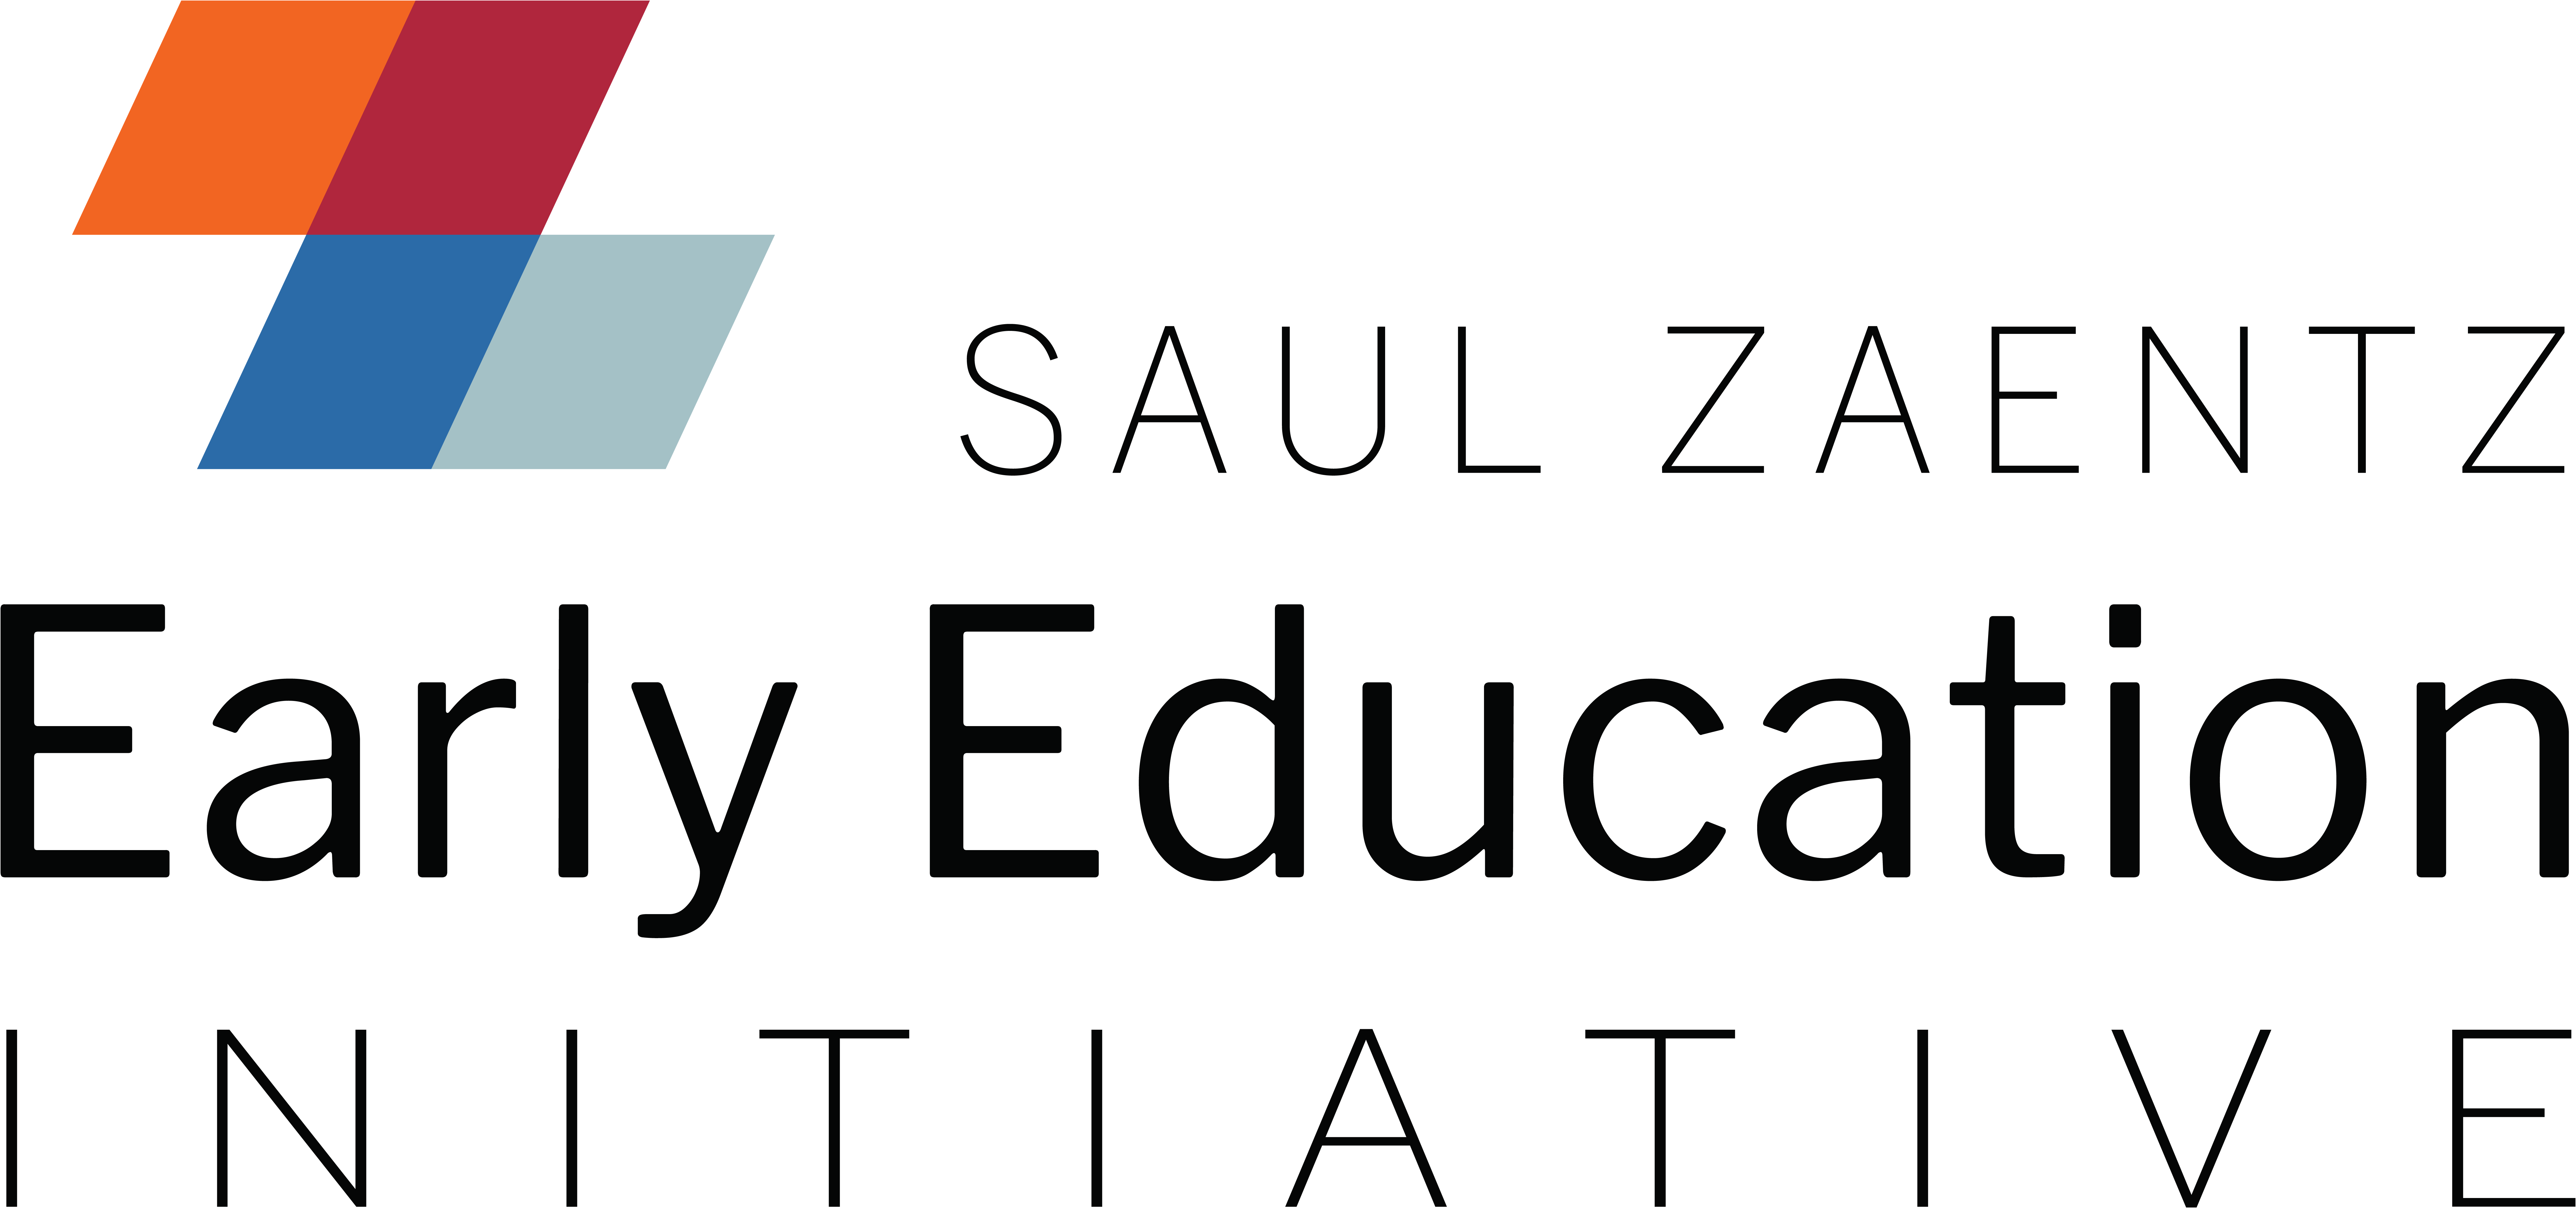 Saul Zaentz Early Education Initiative